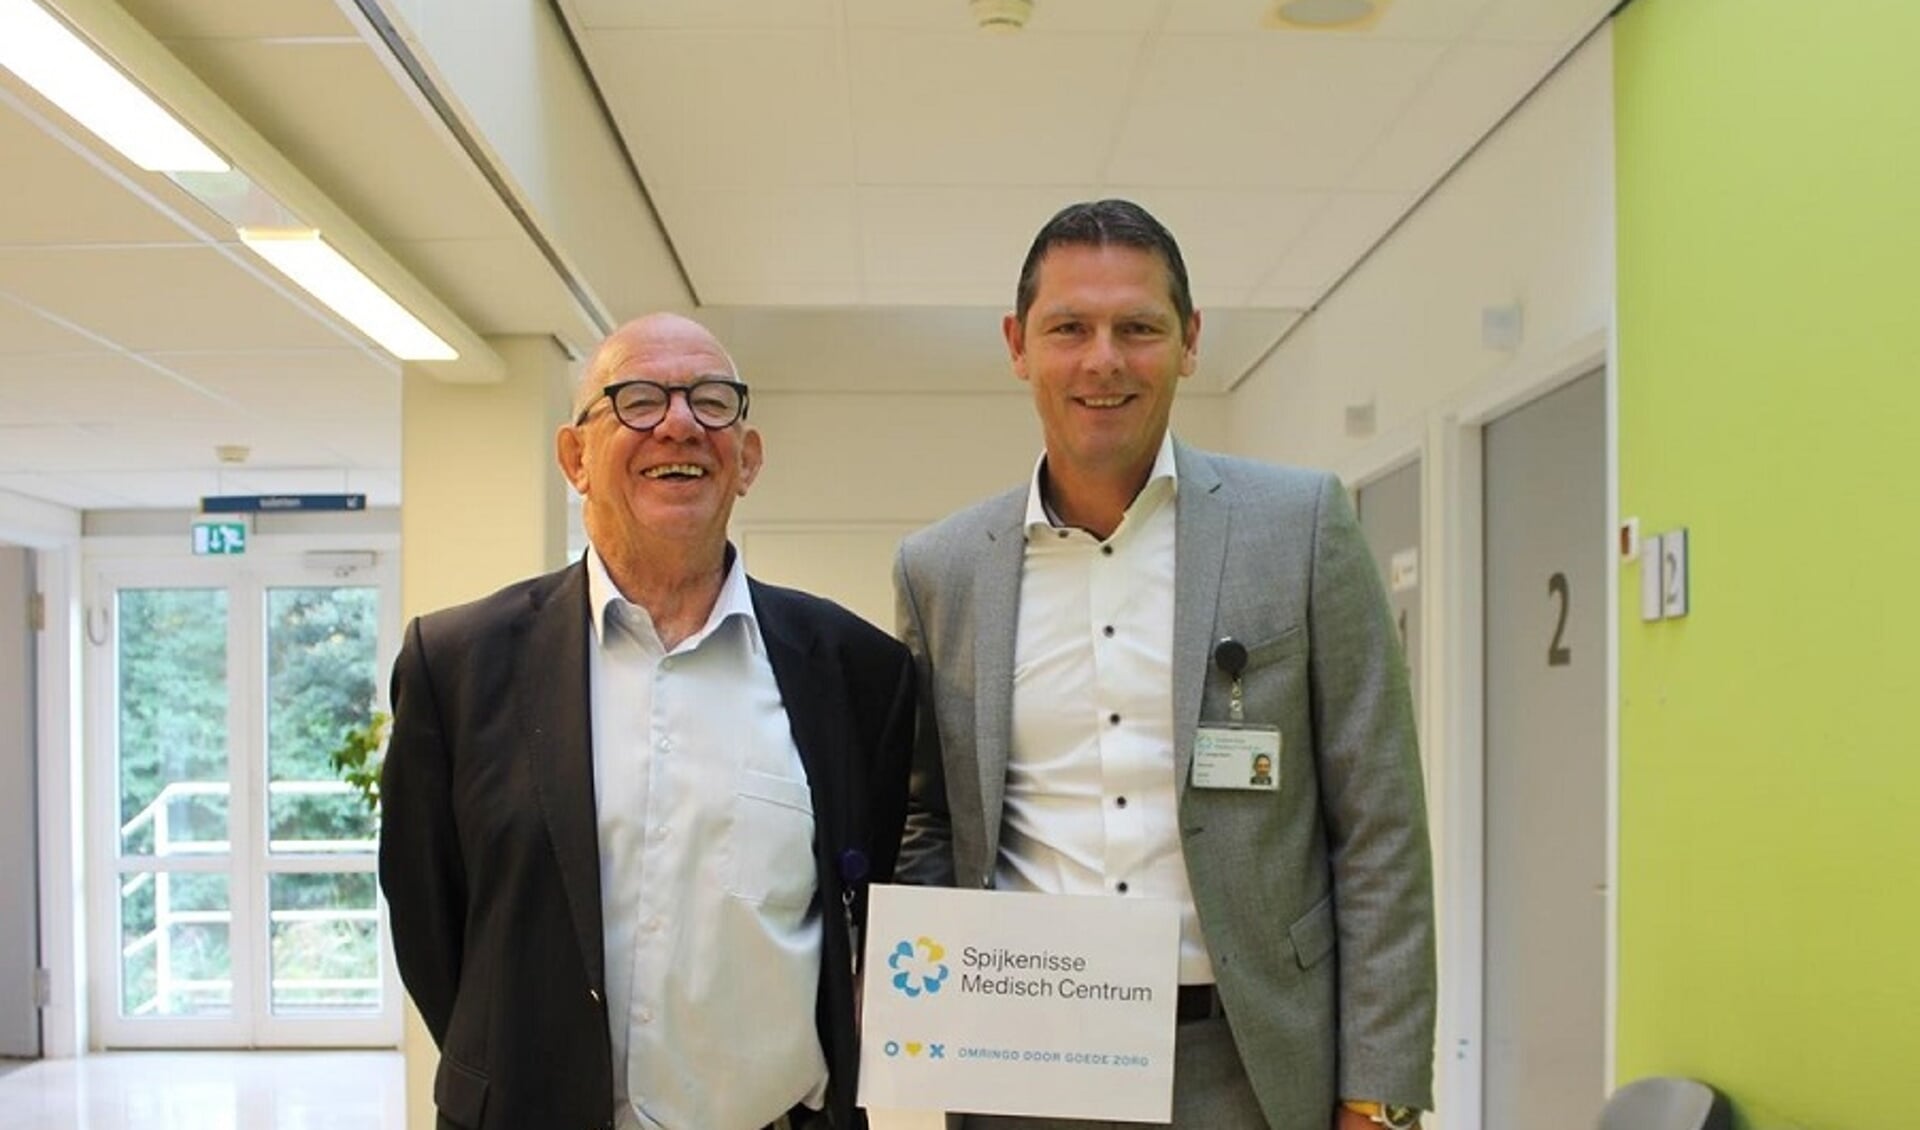 trotse bestuurders Paul van der Velden (links) en Peter Langenbach (rechts) in het Spijkenisse Medisch Centrum.